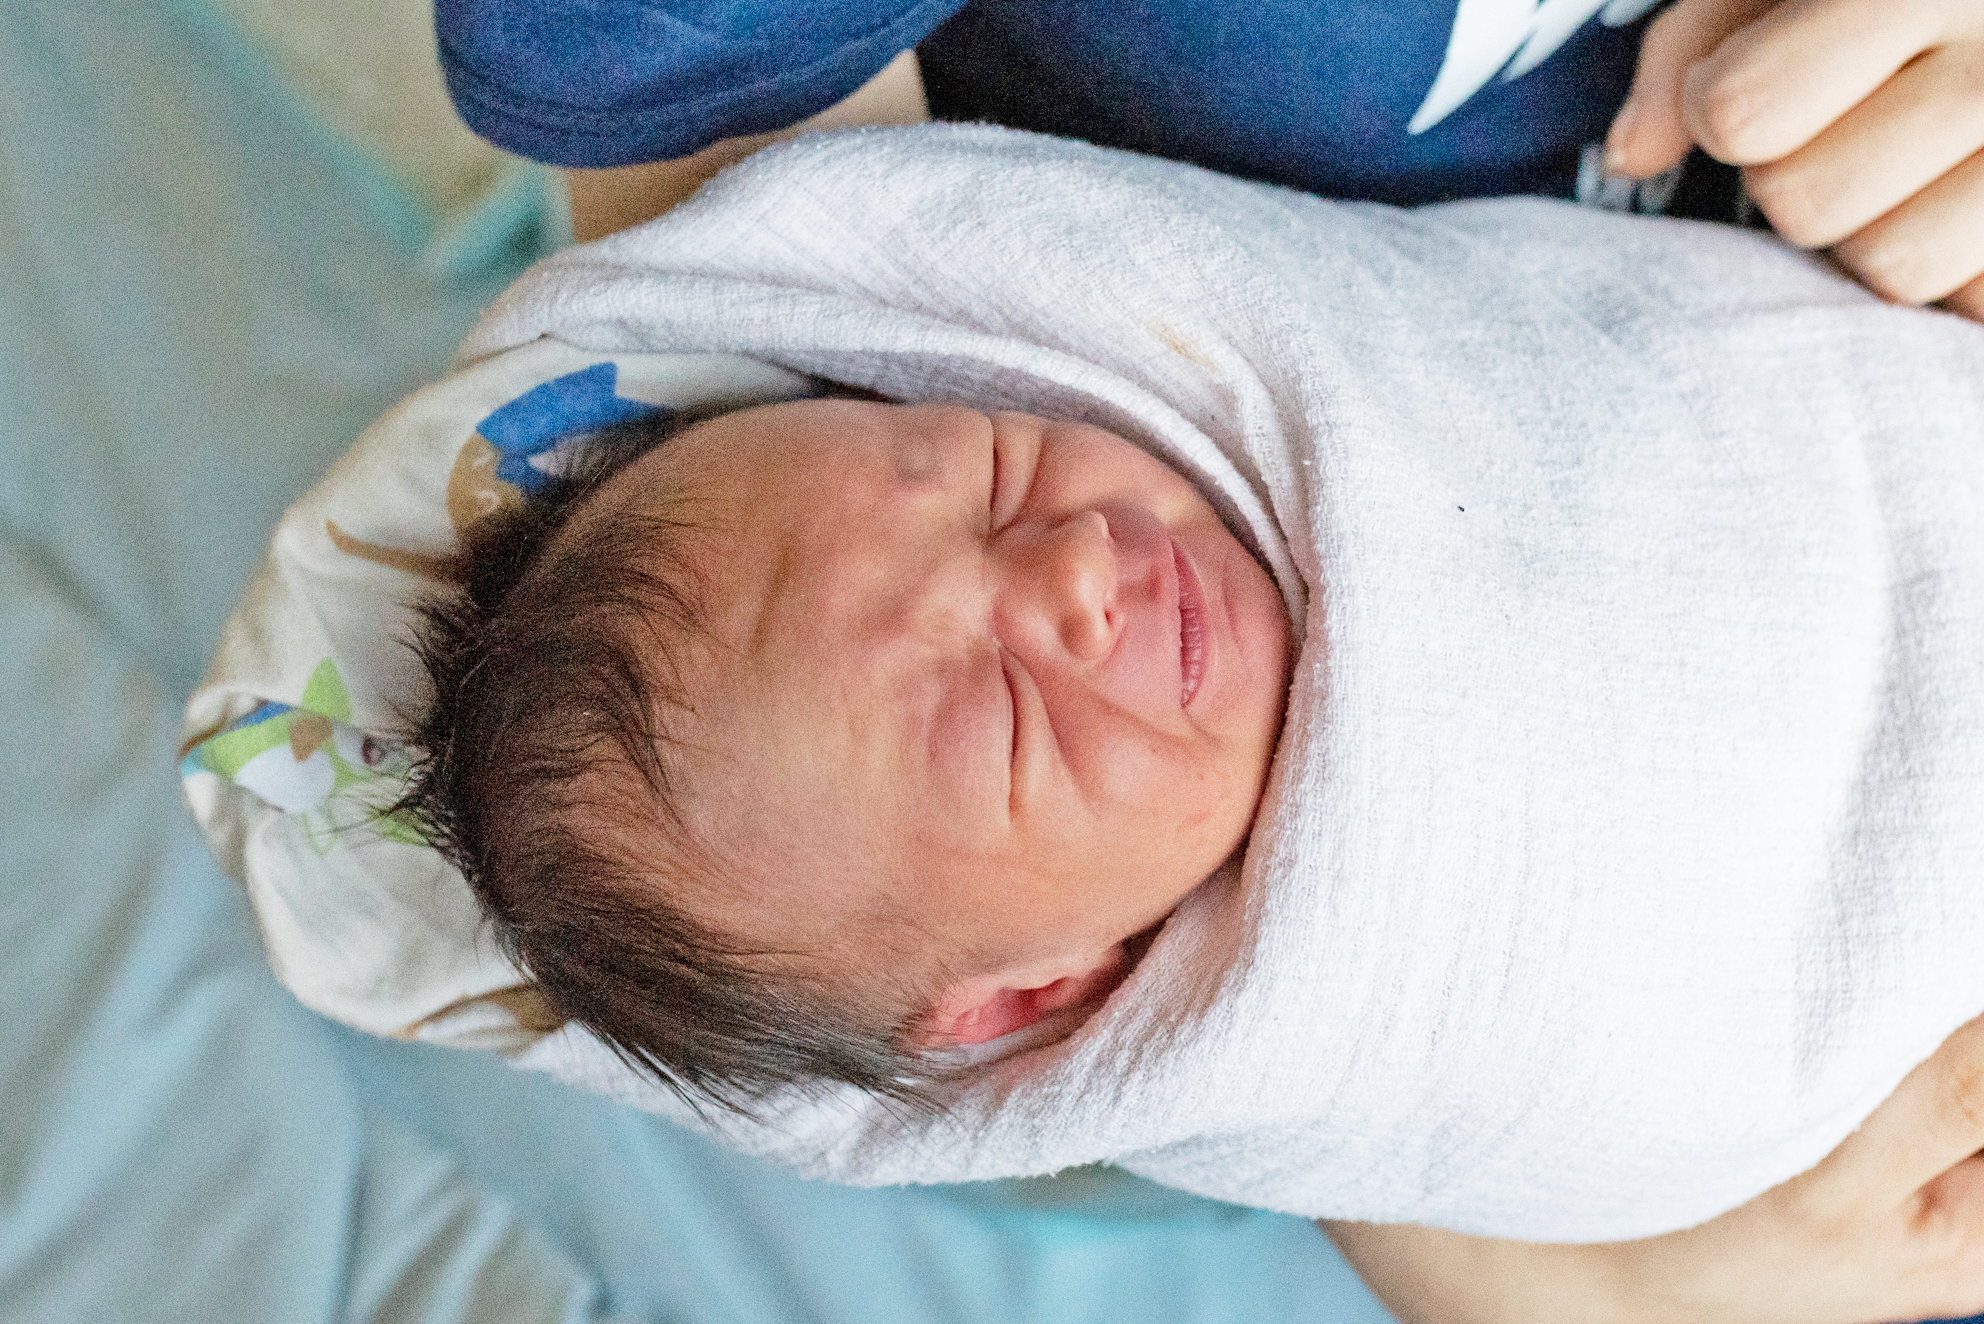 Brayan jest pierwszym dzieckiem urodzonym na wodzisławskiej porodówce w roku 2023. Maluszek pojawił się na świecie 1.01 o godz. 12.27. Ważył 3490 g i mierzył 54 cm. Rodzicami Brayana zostali Paulina i Sebastian z Radlina.